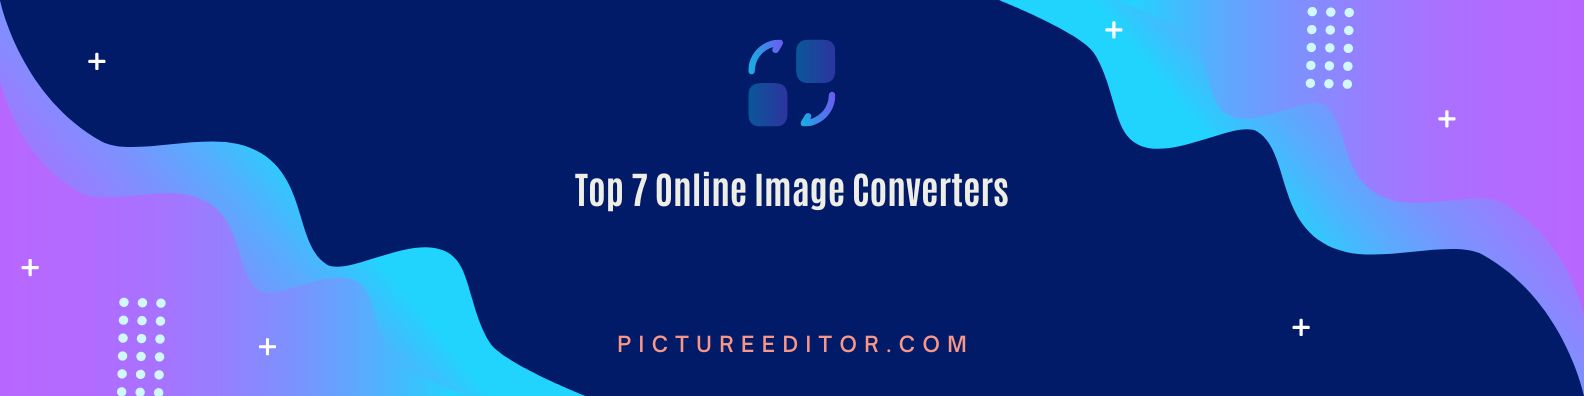 Top 7 Online Image Converters